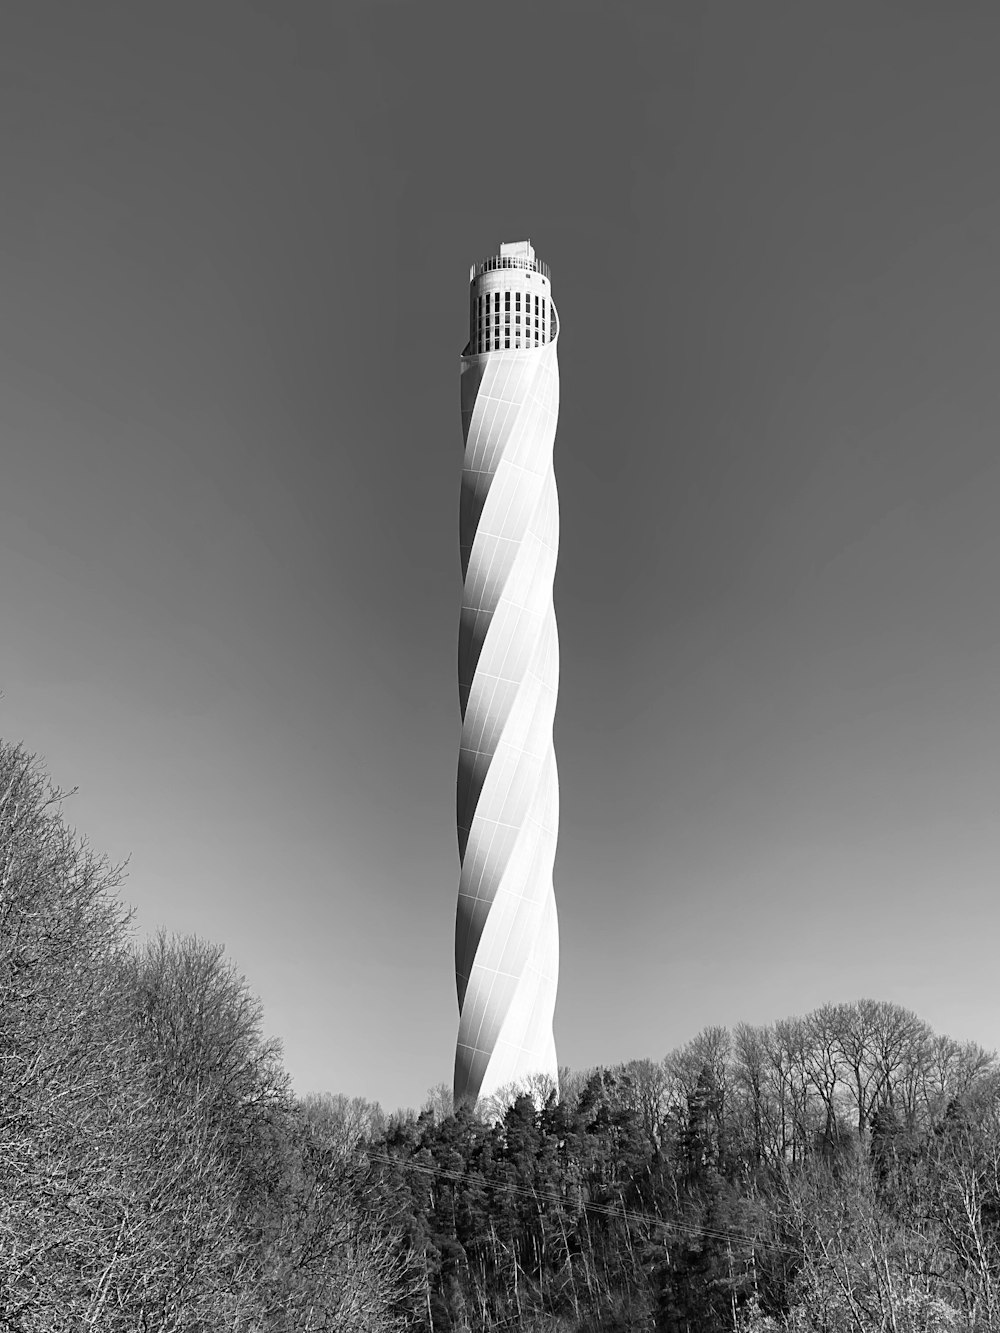 Foto en escala de grises de una torre